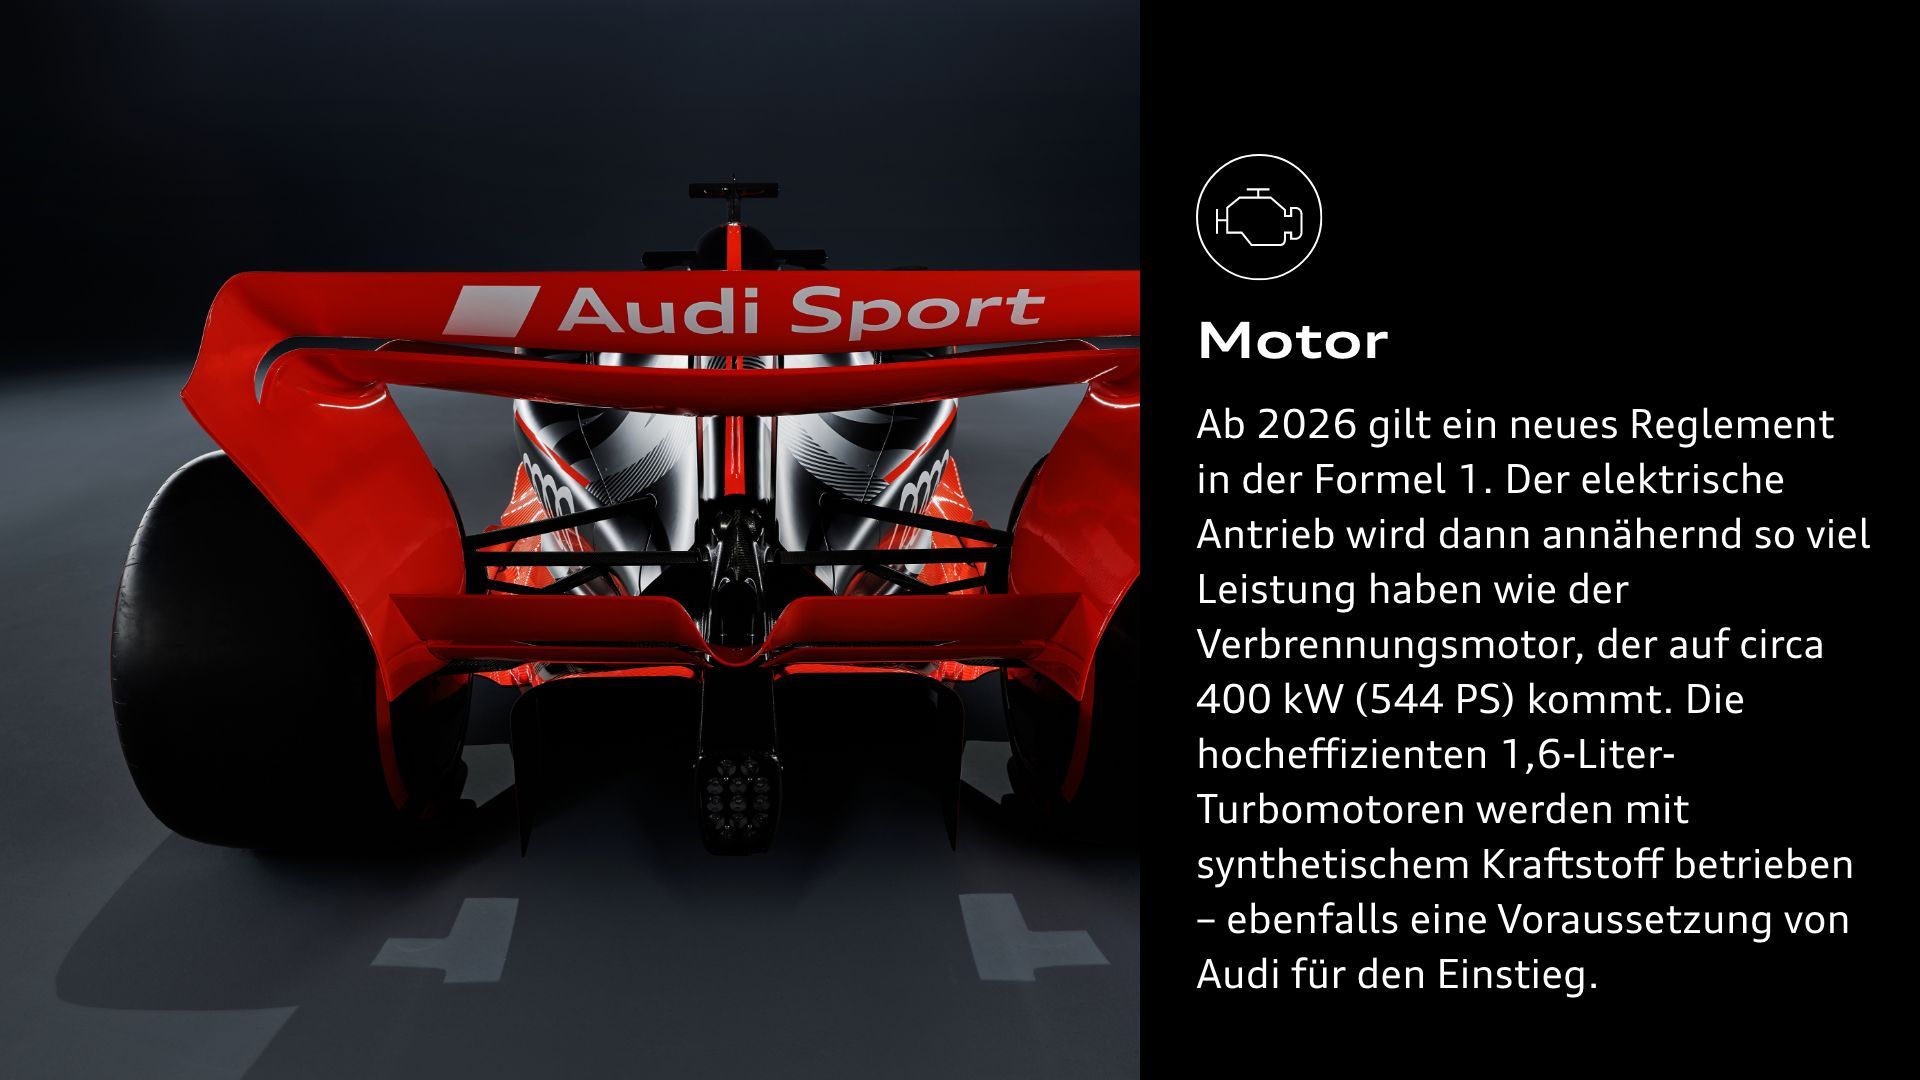 Motor: Ab 2026 gilt ein neues Reglement in der Formel 1. Der elektrische Antrieb wird dann annähernd so viel Leistung haben wie der Verbrennungsmotor, der auf circa 400 kW (544 PS) kommt. Die hocheffizienten 1,6-Liter-Turbomotoren werden mit synthetischem Kraftstoff betrieben – ebenfalls eine Voraussetzung von Audi für den Einstieg.